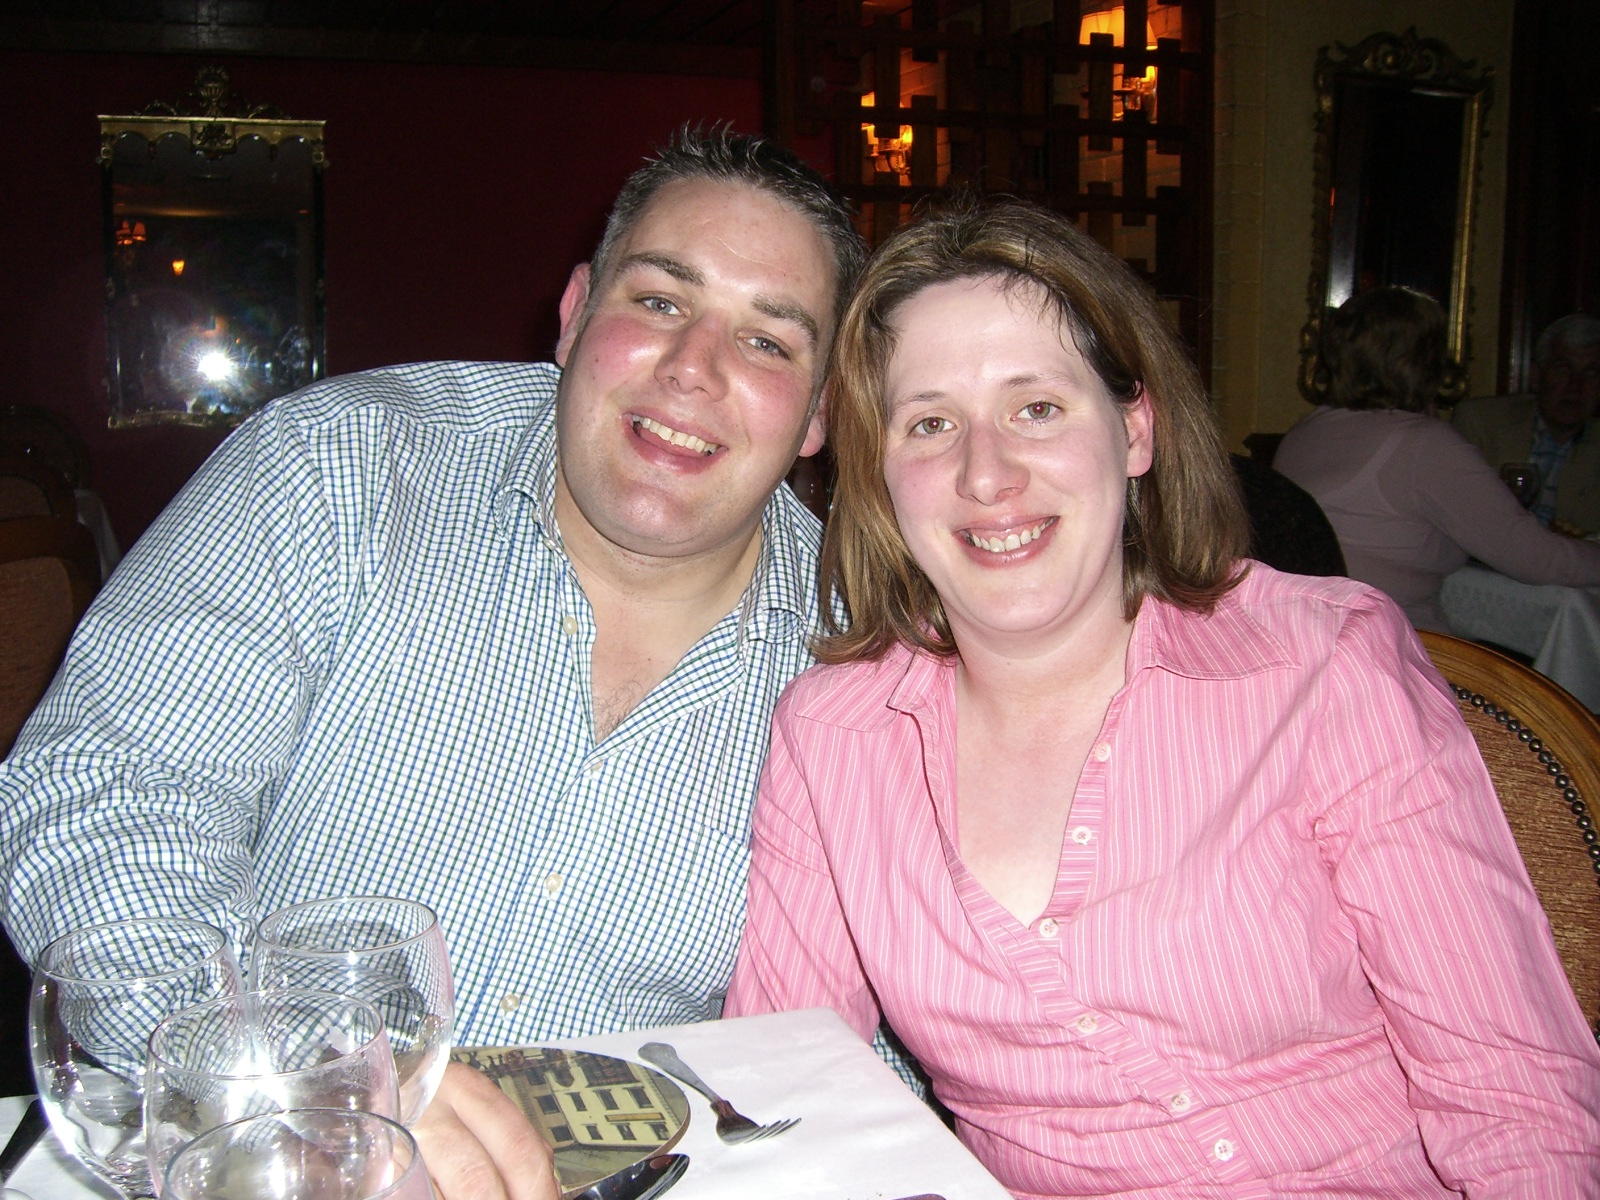 Darren & Mary at dinner